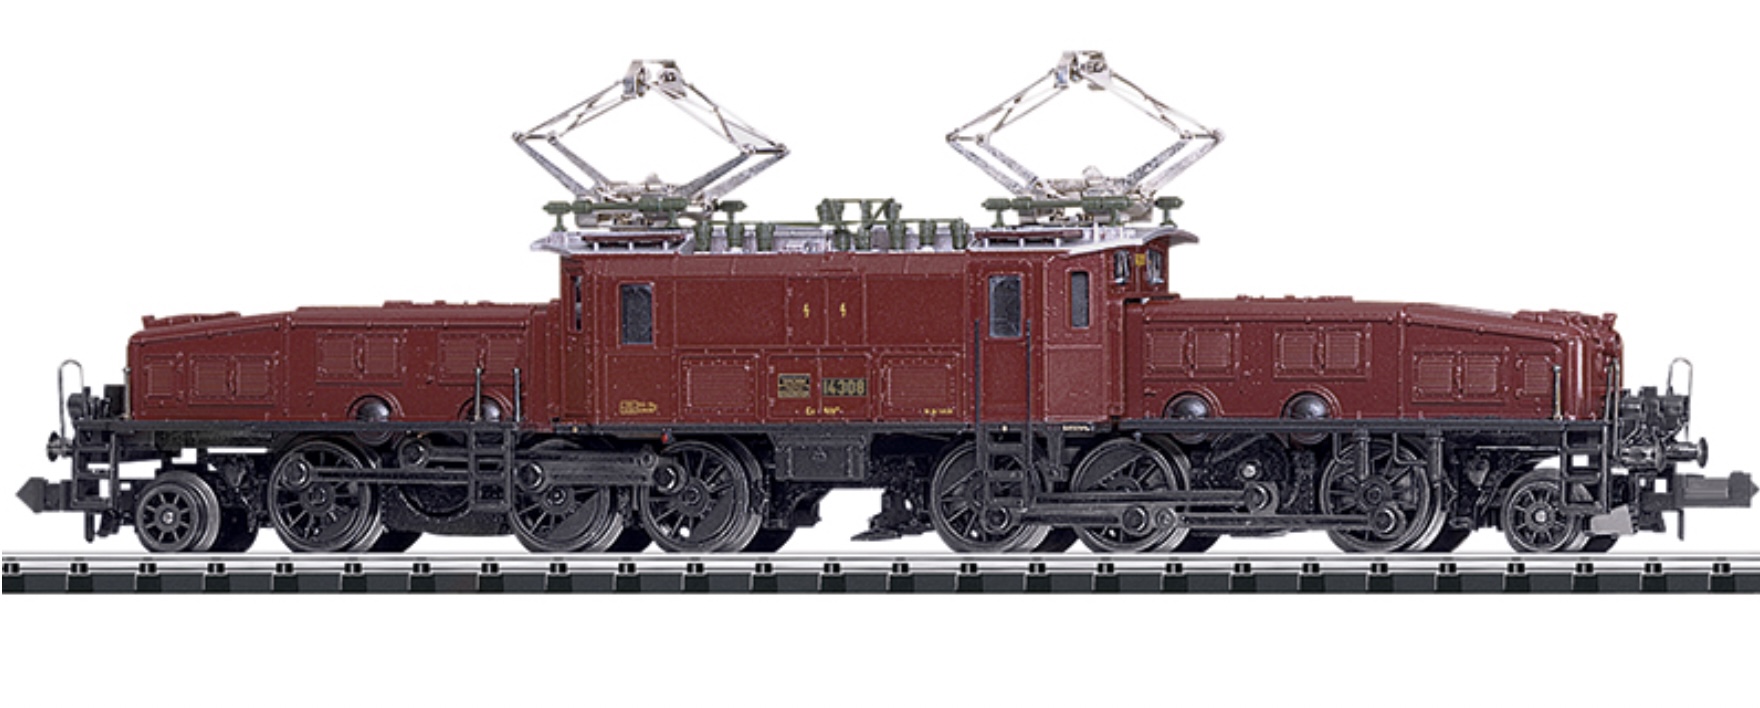 N Scale - Minitrix - 16682 - Locomotive, Electric, Crocodile - SBB CFF FFS - 14308